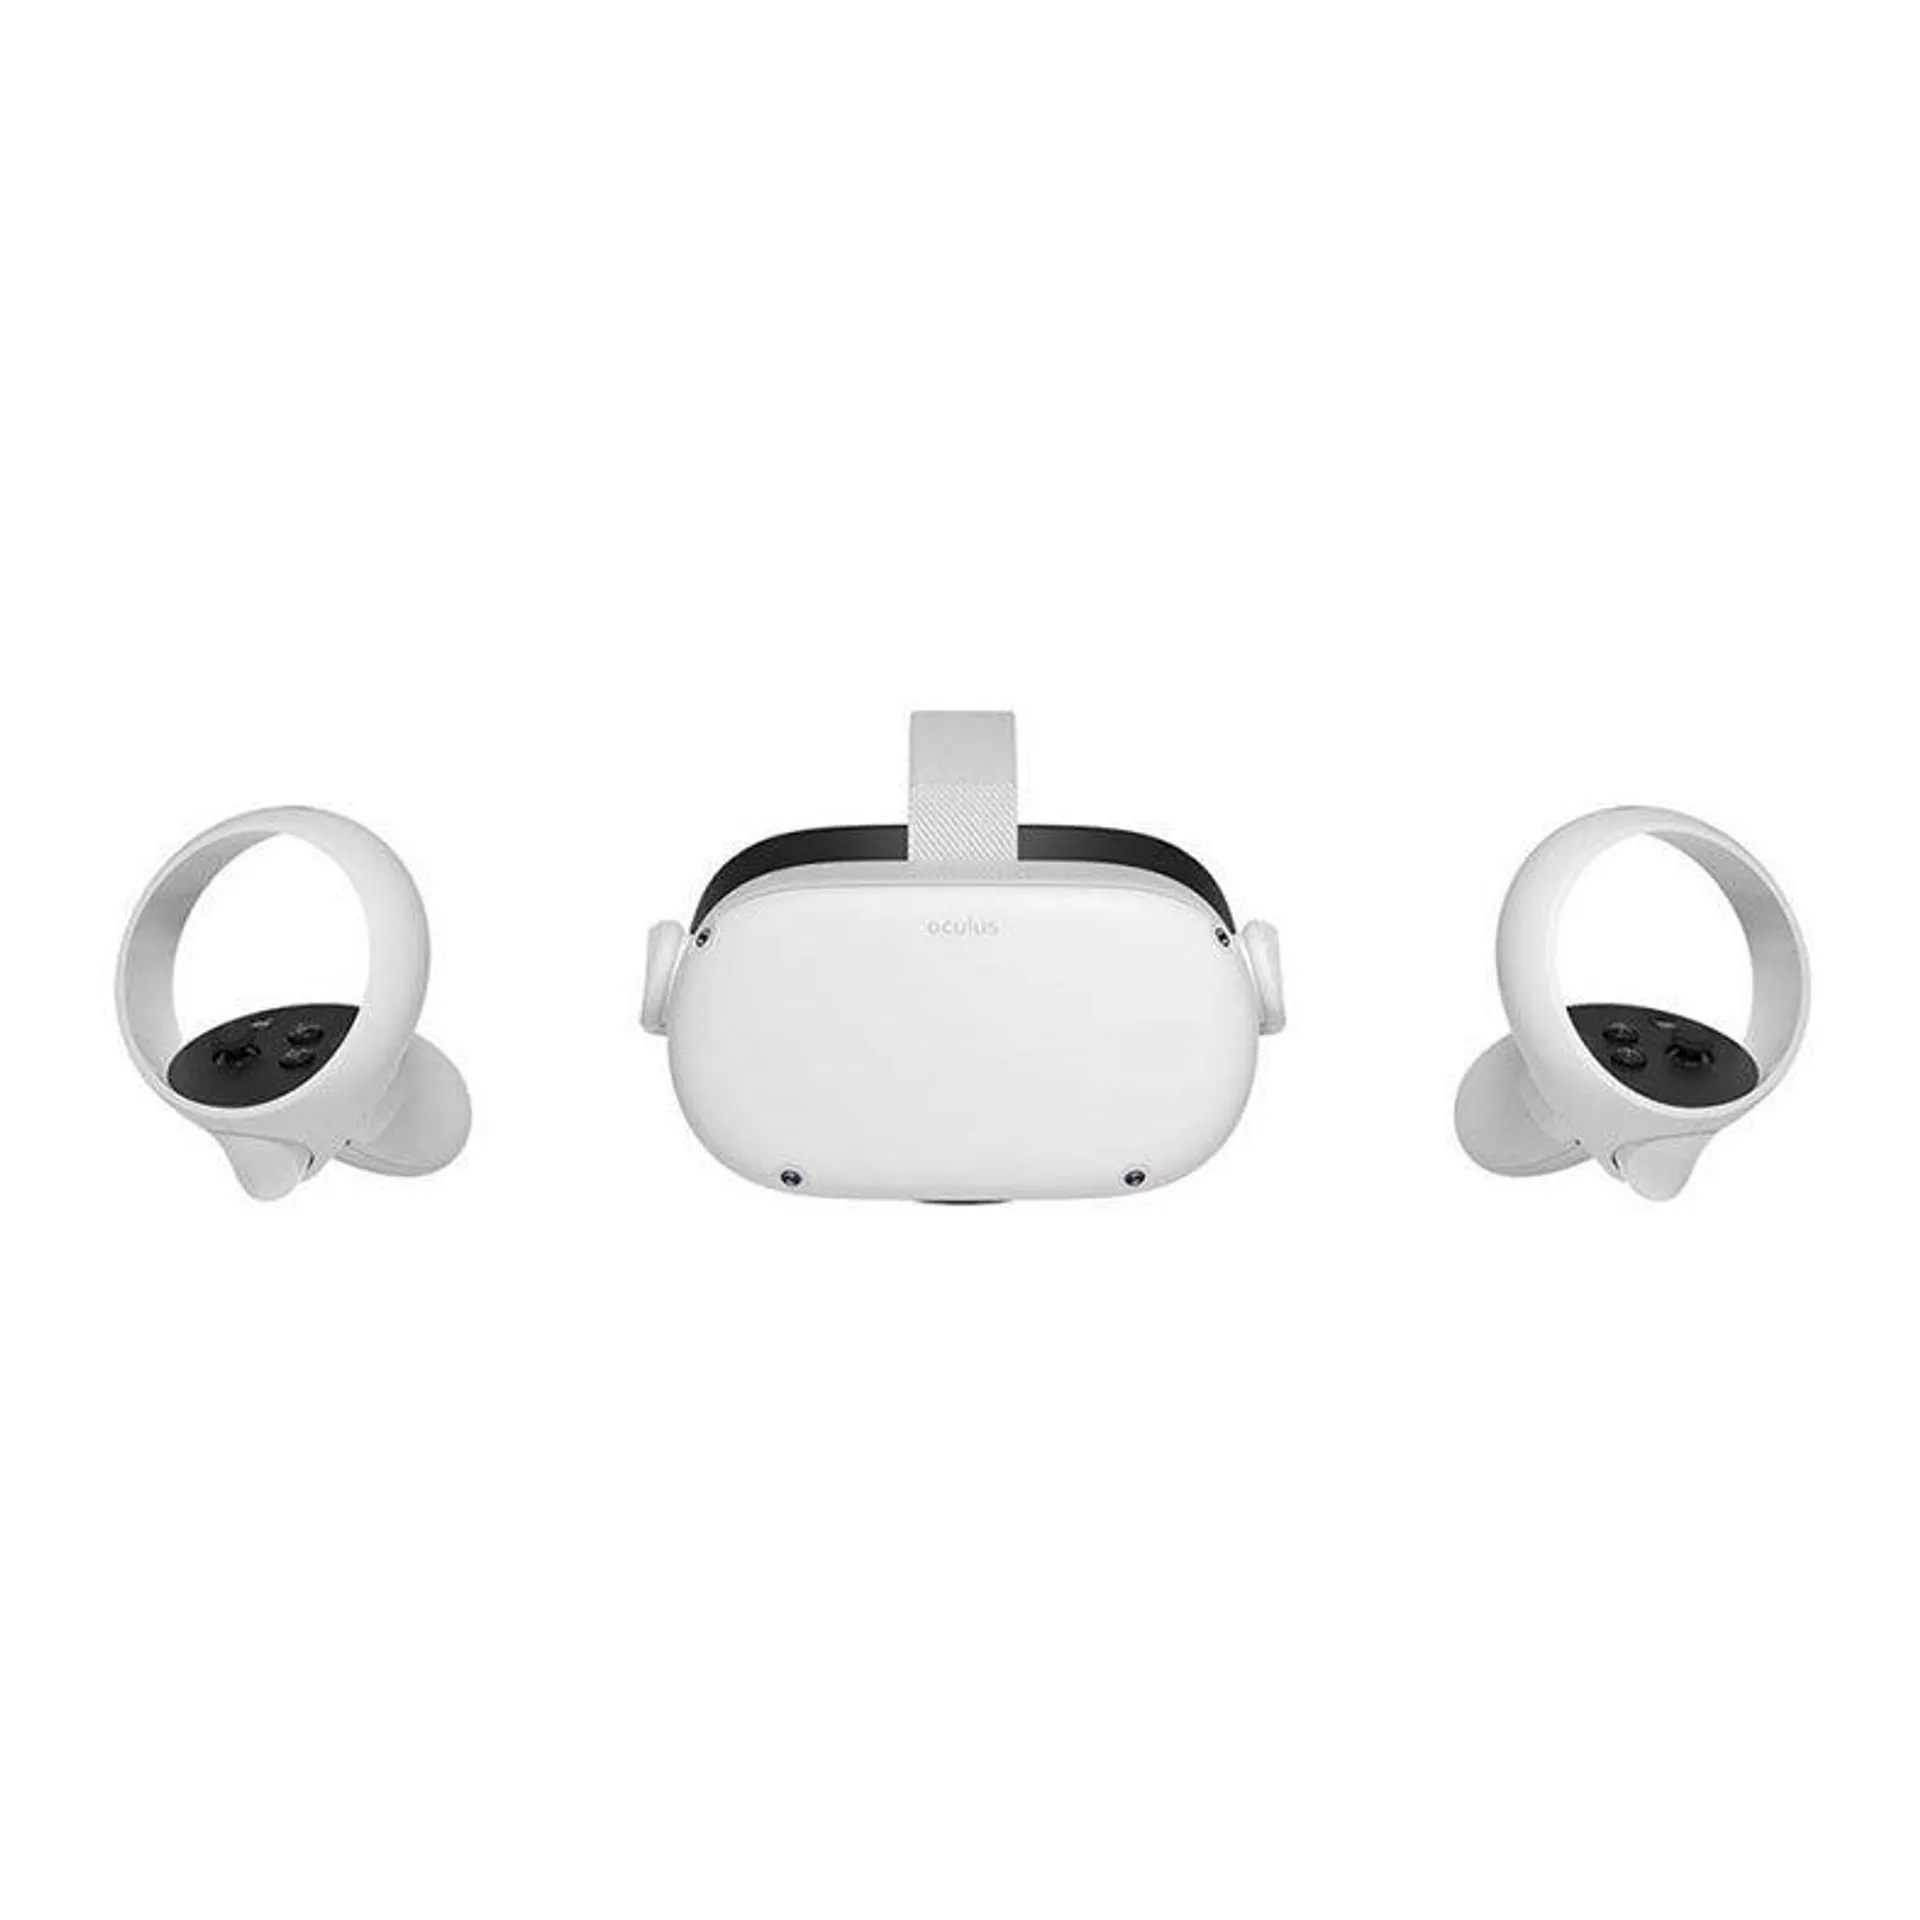 Oculos de Realidade Virtual Oculus Quest 2, 128GB, Branco, 899-00182-02